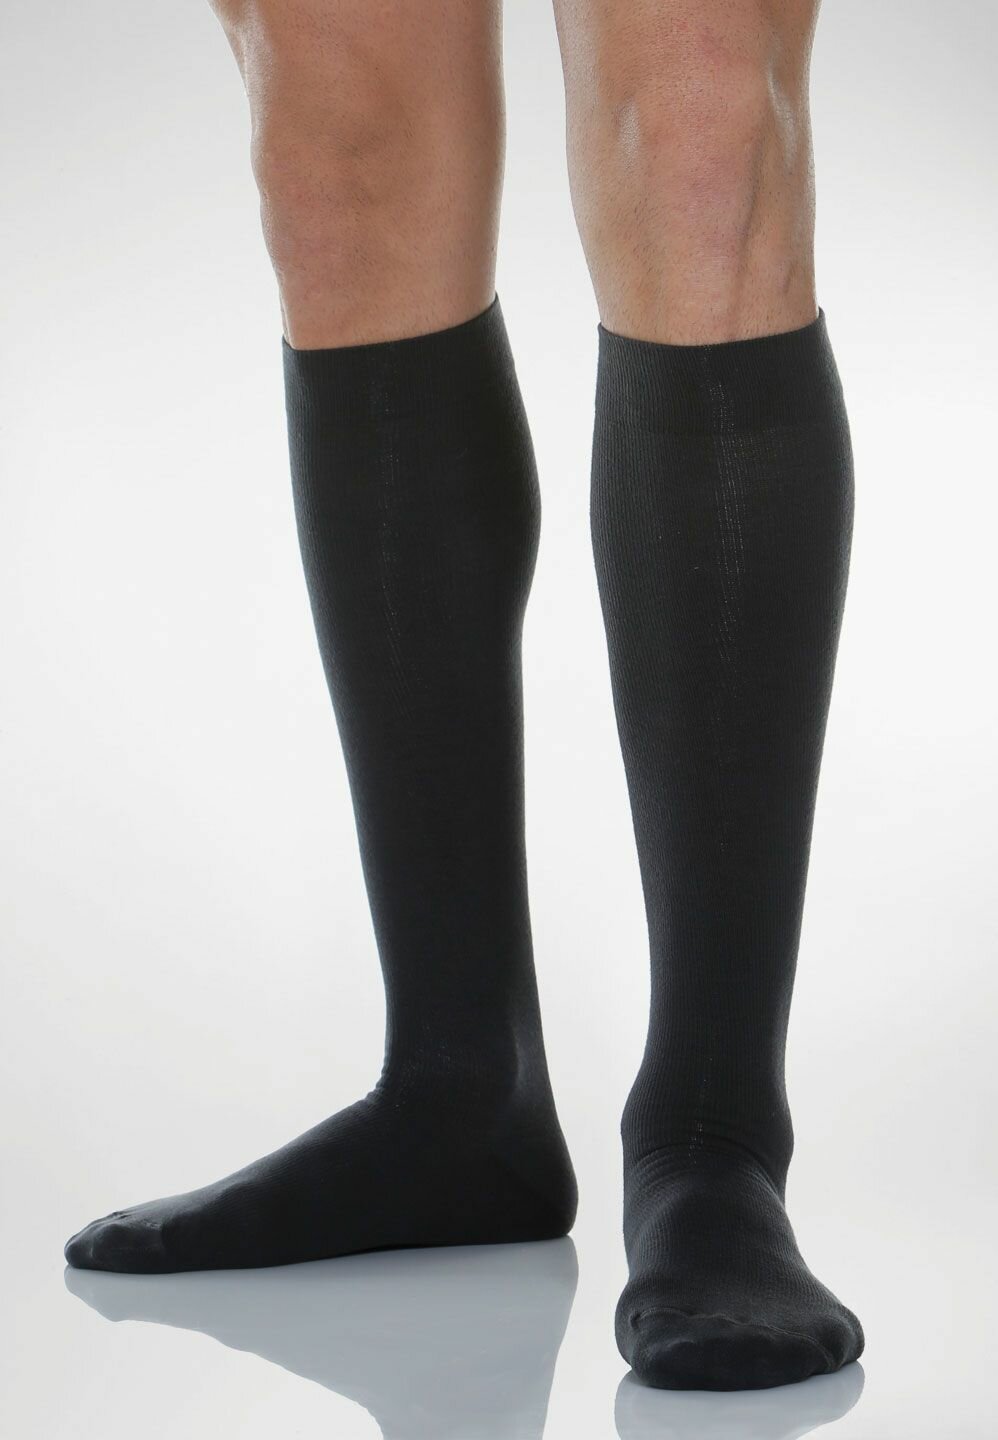 Гольфы Relaxsan Cotton Socks унисекс с хлопком, 1 класс компрессии, размер 2, черный